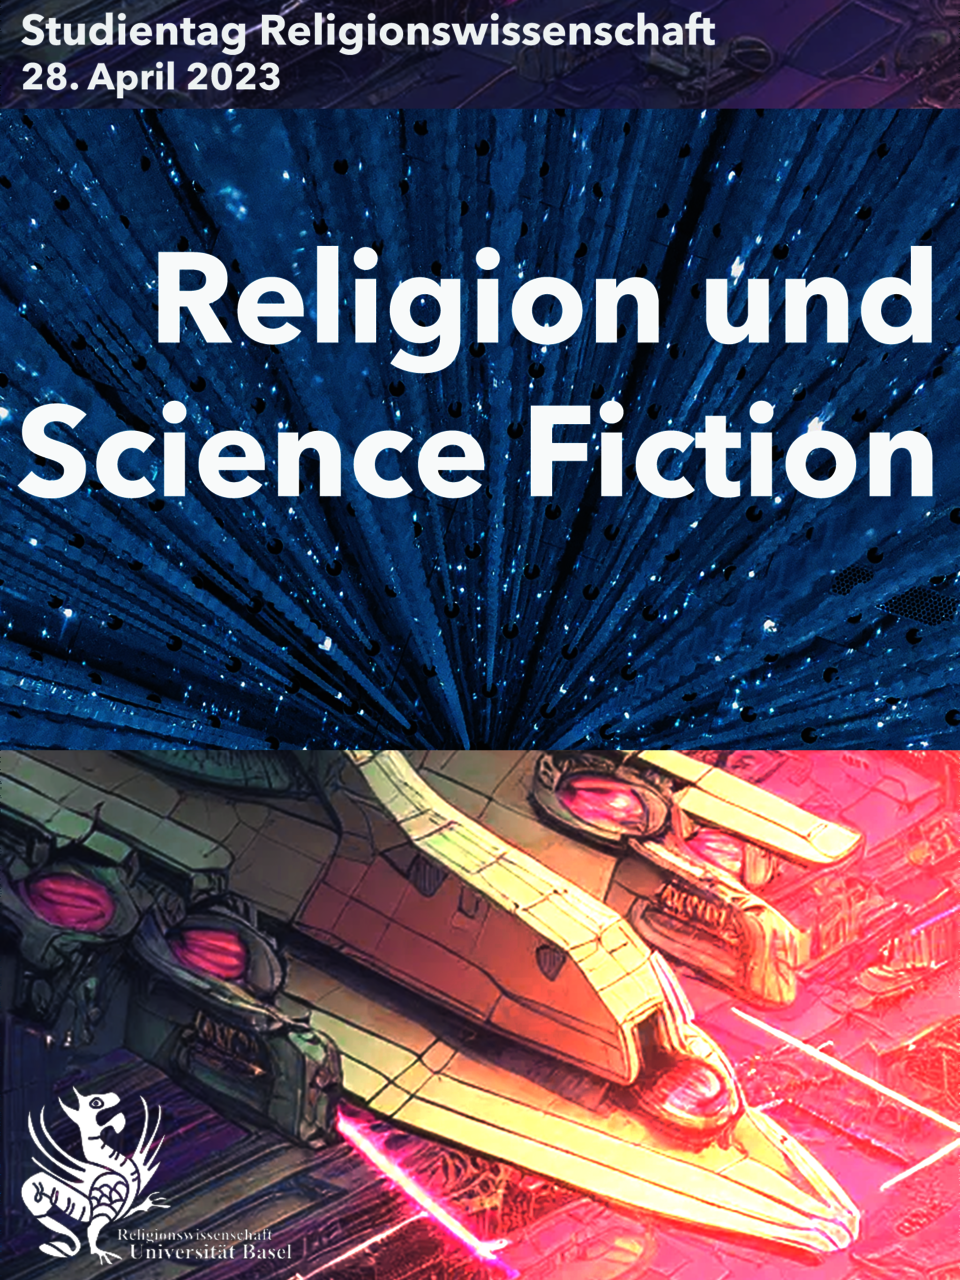 Flyer für den Studientag "Religion und Science Fiction". Der Hintergrund besteht aus Bildern, welche Maschinen oder Raumschiffe zu zeigen scheinen.